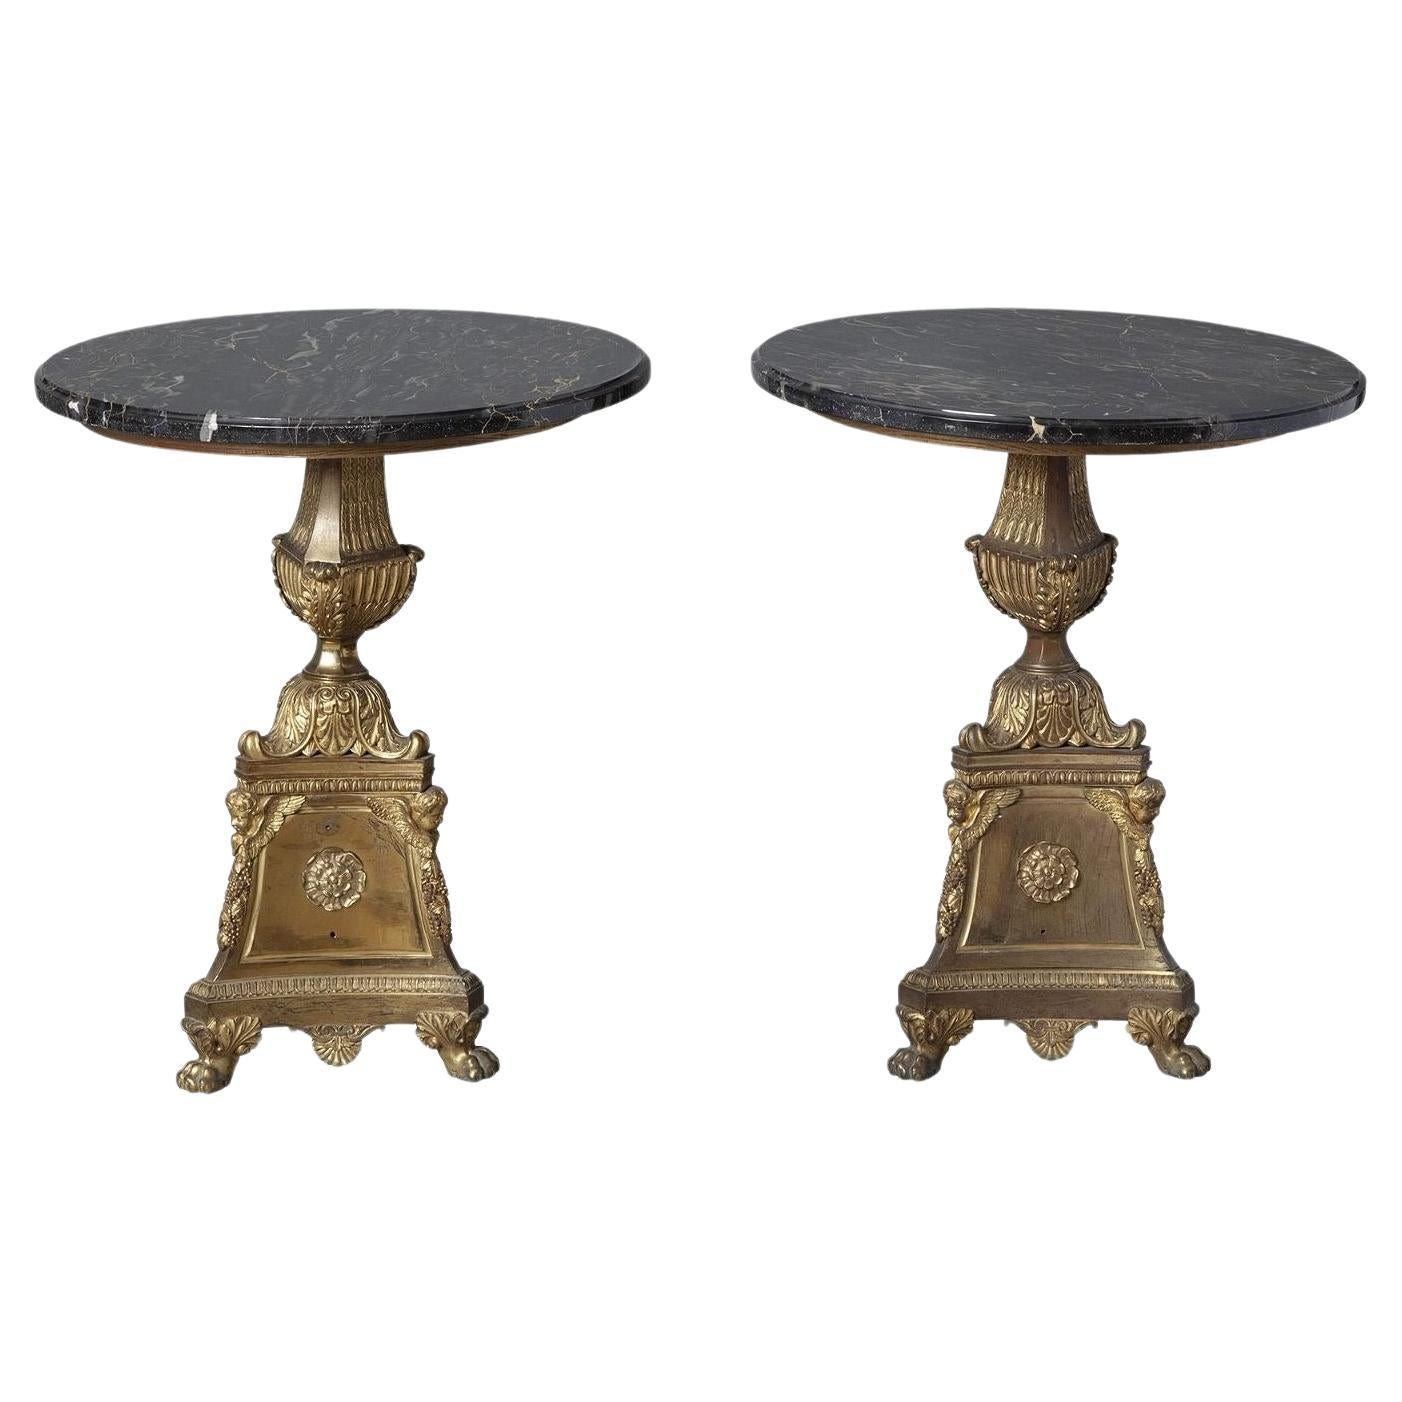 Paire de tables d'appoint de style Empire français du 19ème siècle en marbre et bronze doré